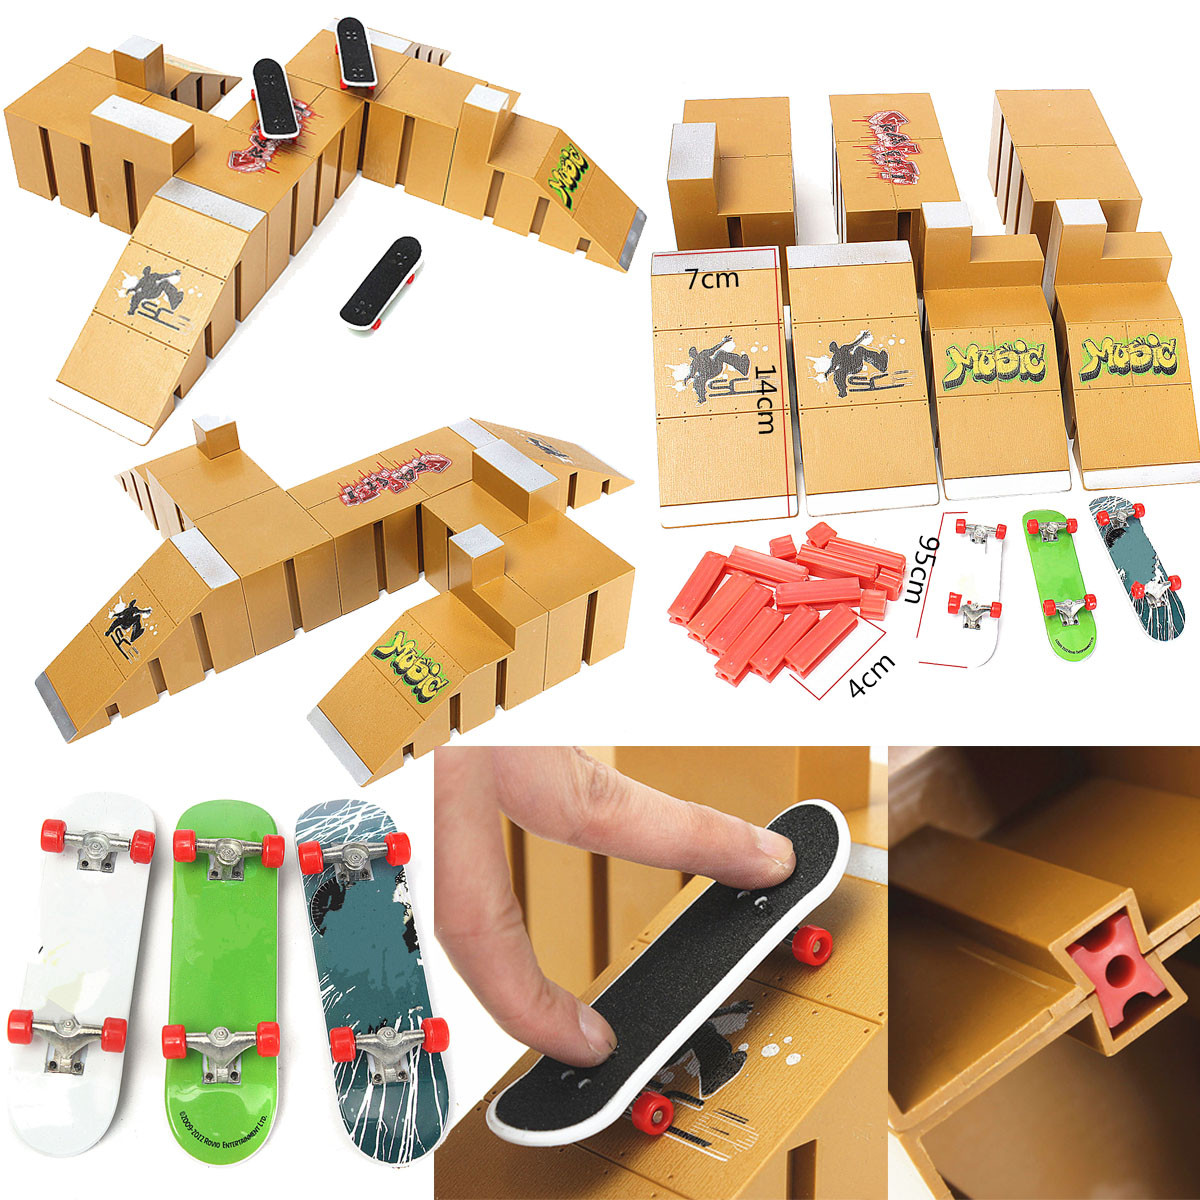 Free Size 8092a xiegons0 Doigt Skate Park Suite pour Skate Park Rampe Mini Démarreur Kit avec 1 Doigt Skateboard 3 Skateboards pour Enfants 